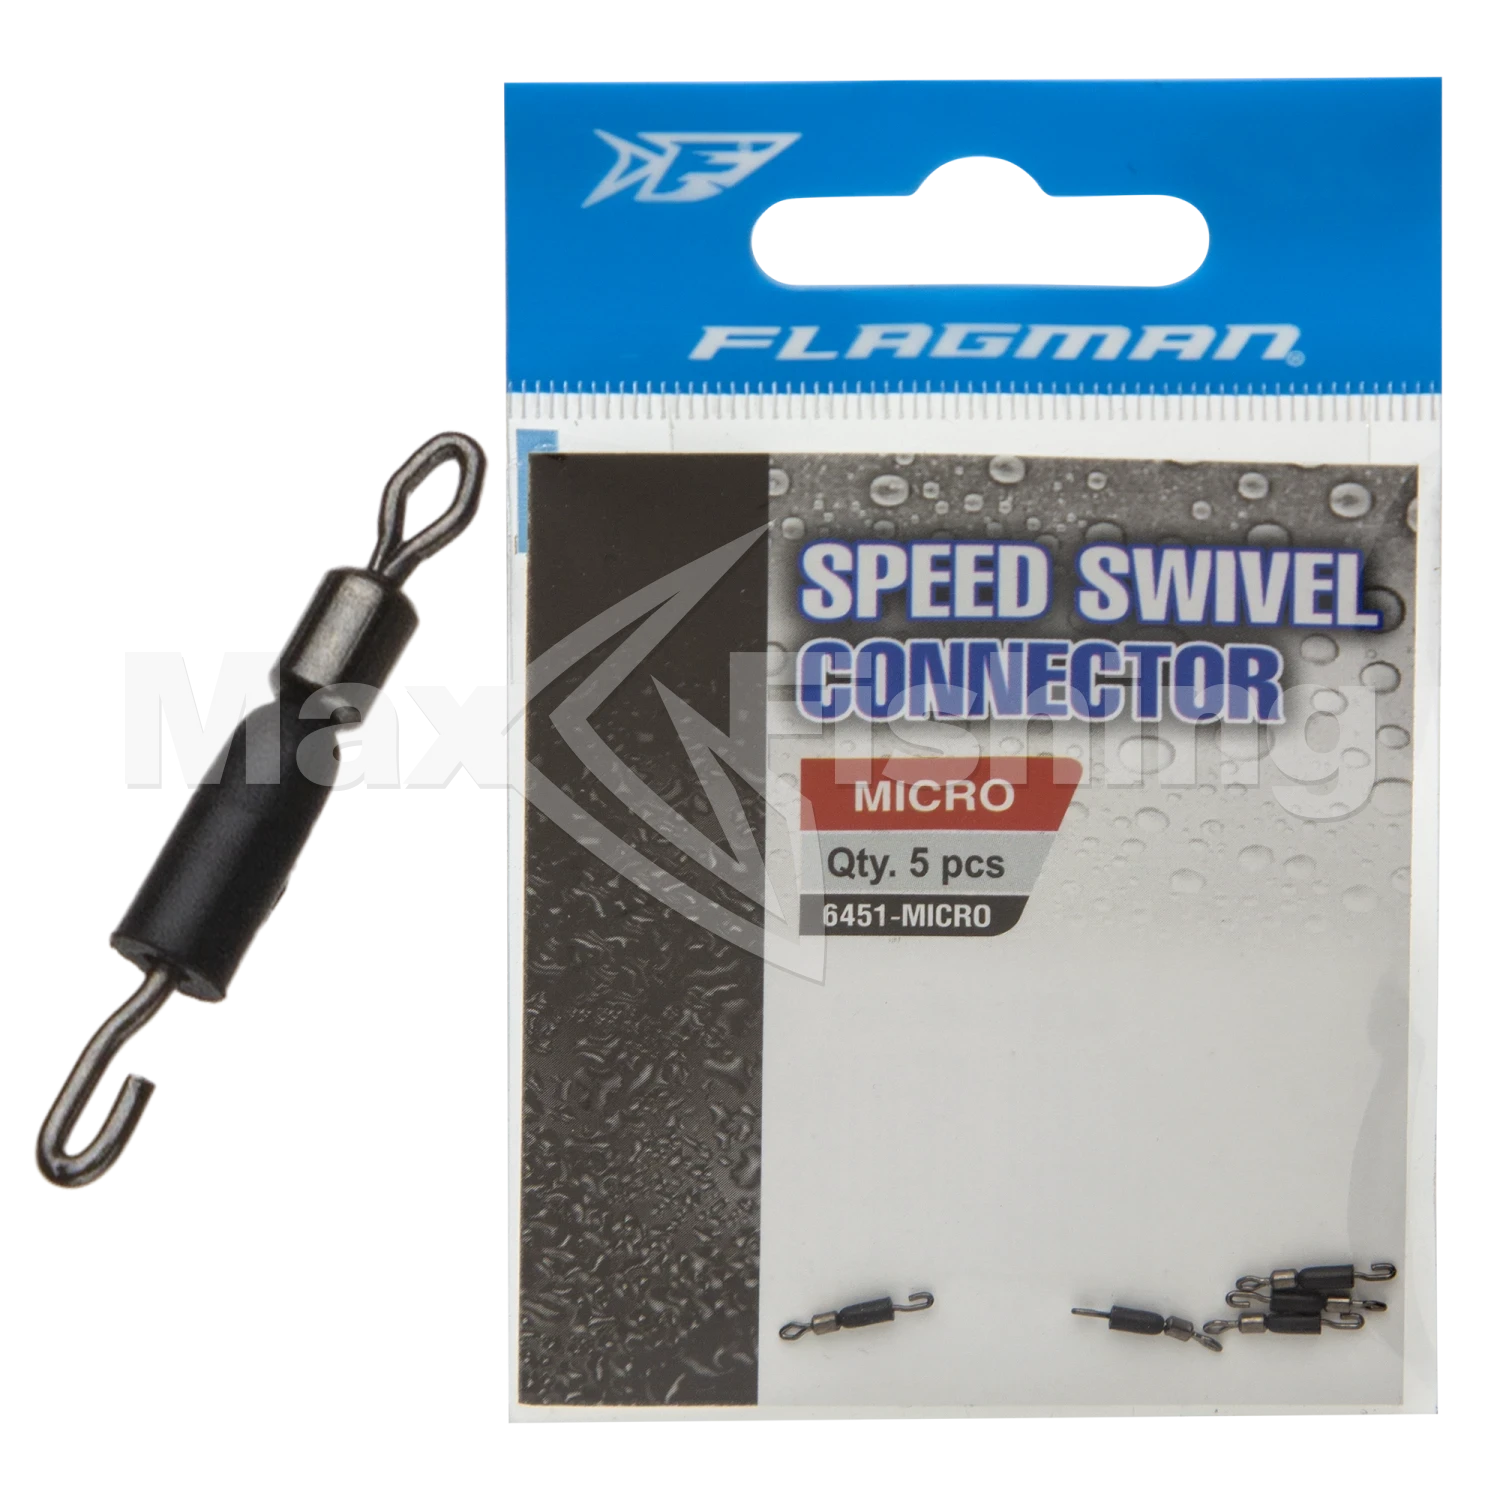 Вертлюг Flagman Speed Swivel Connector Micro